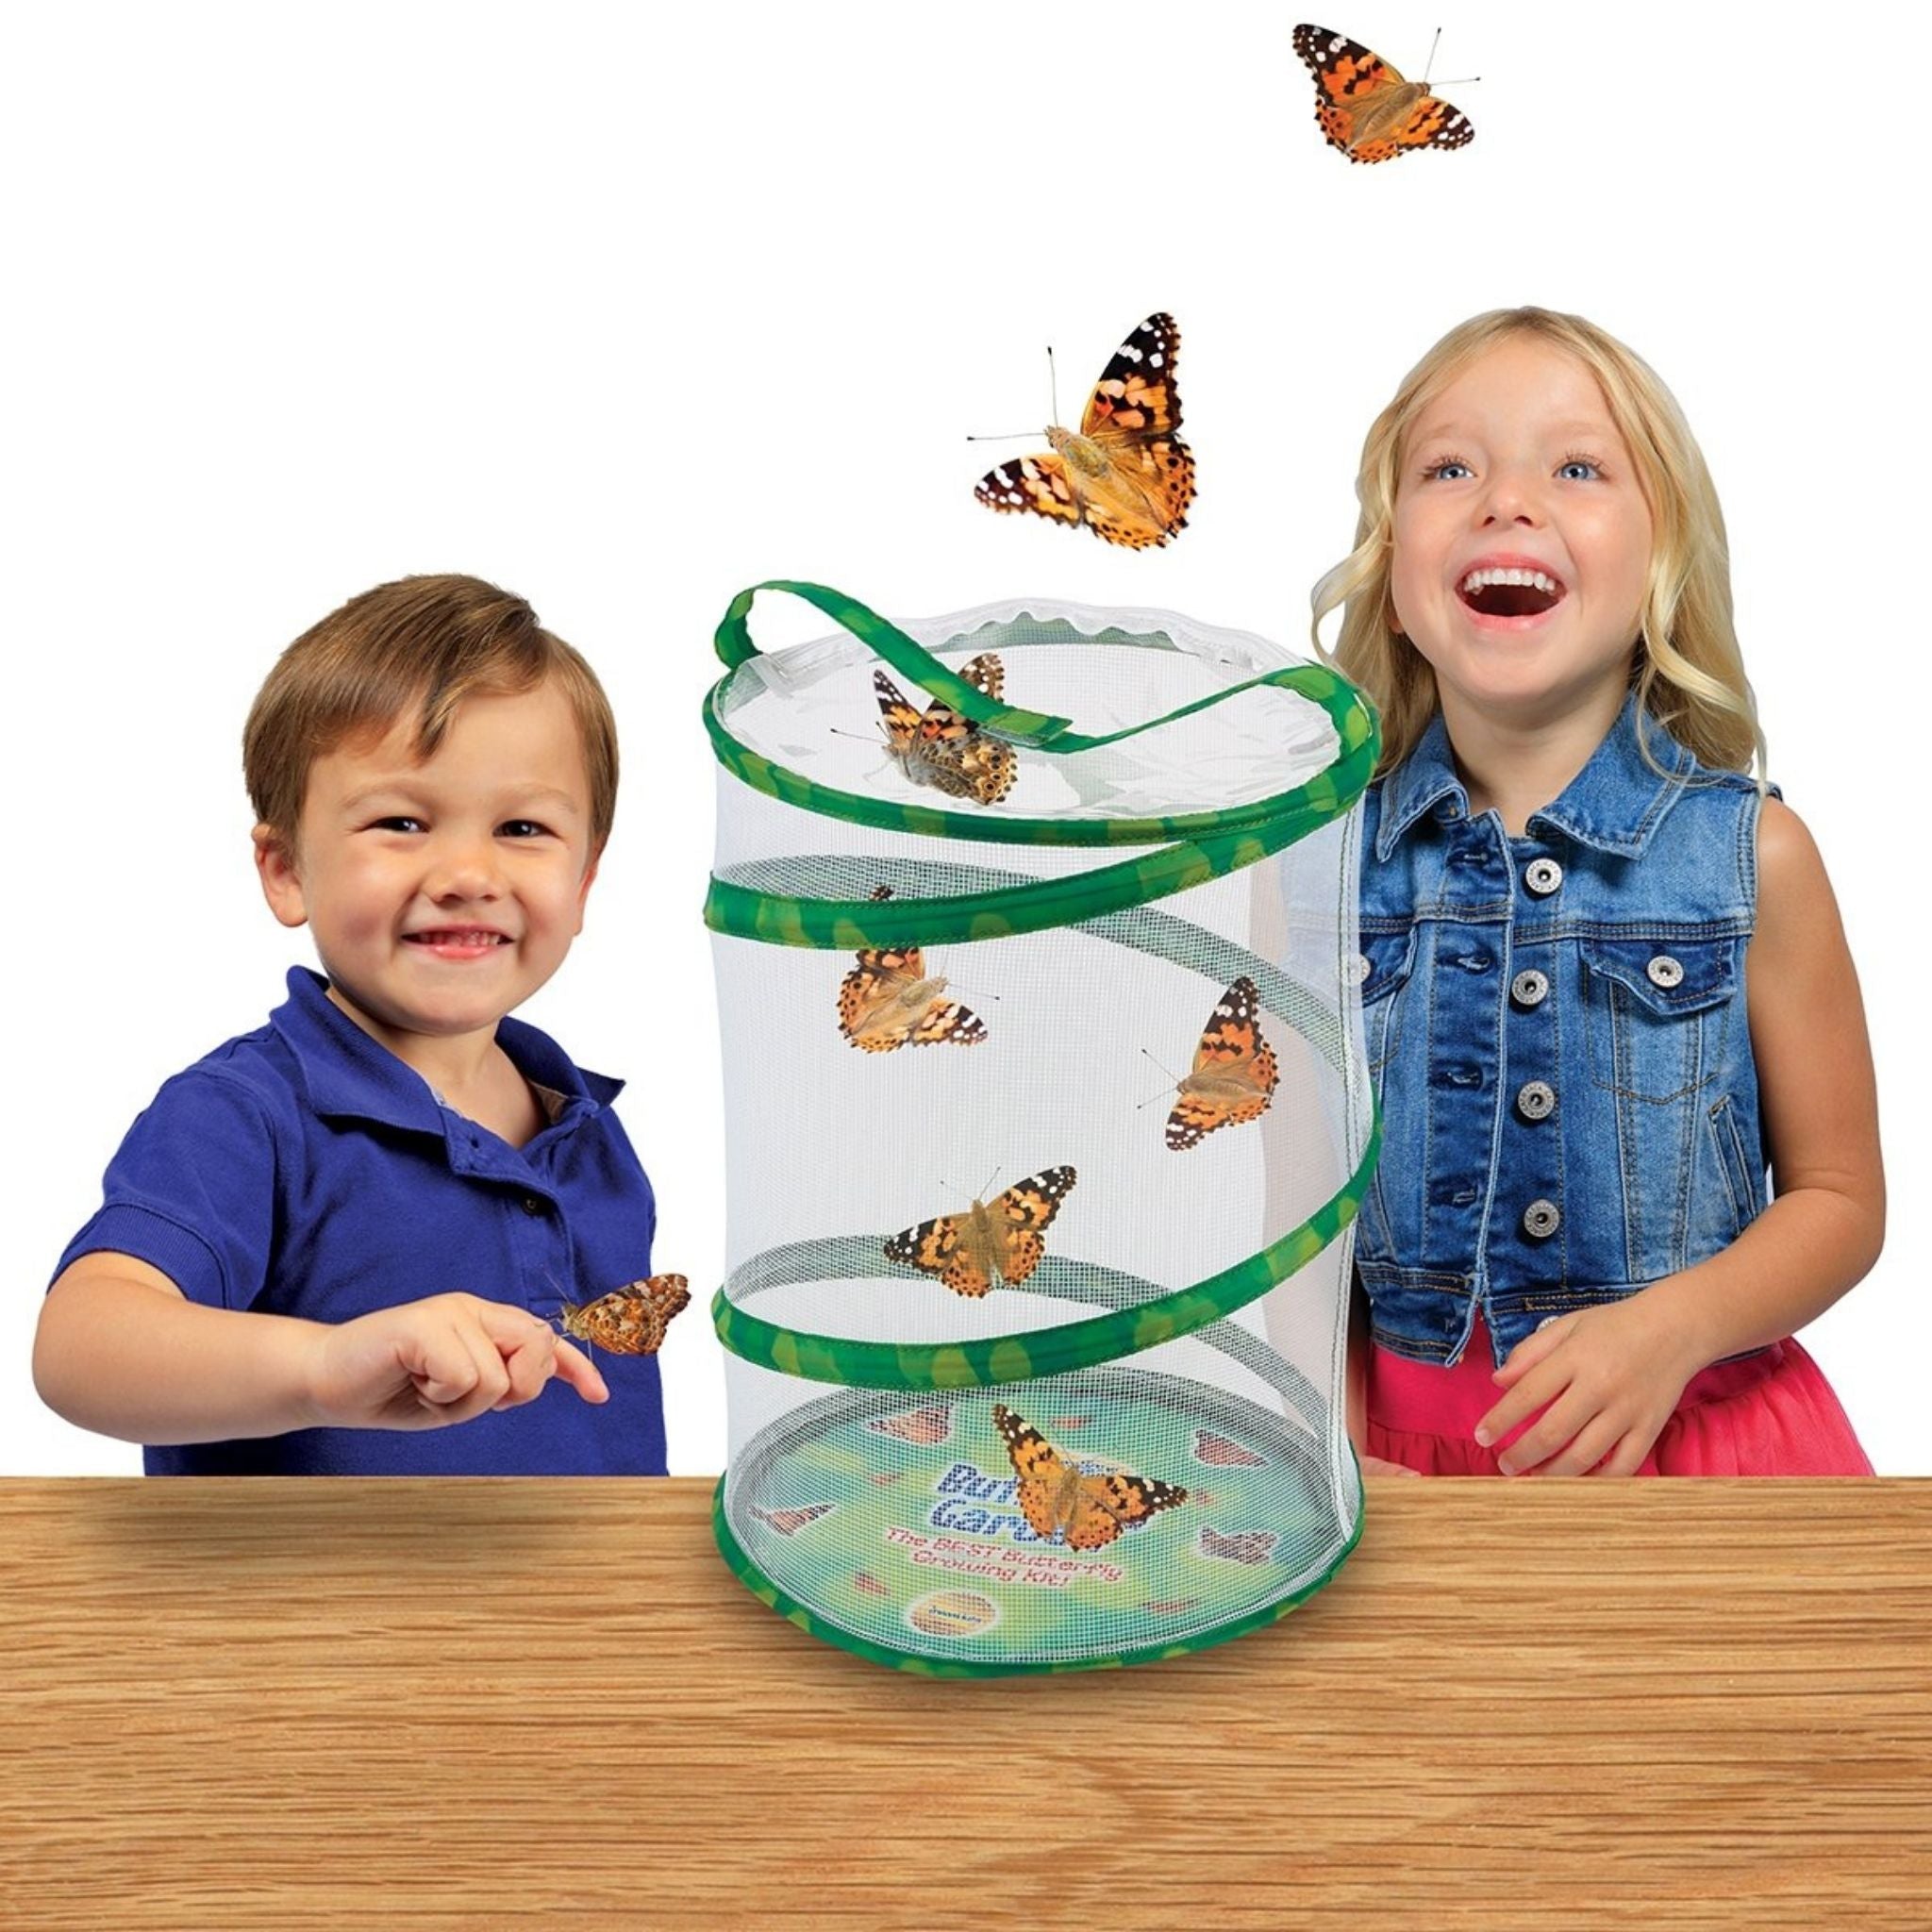 Butterfly Garden  Wonder Works Toys